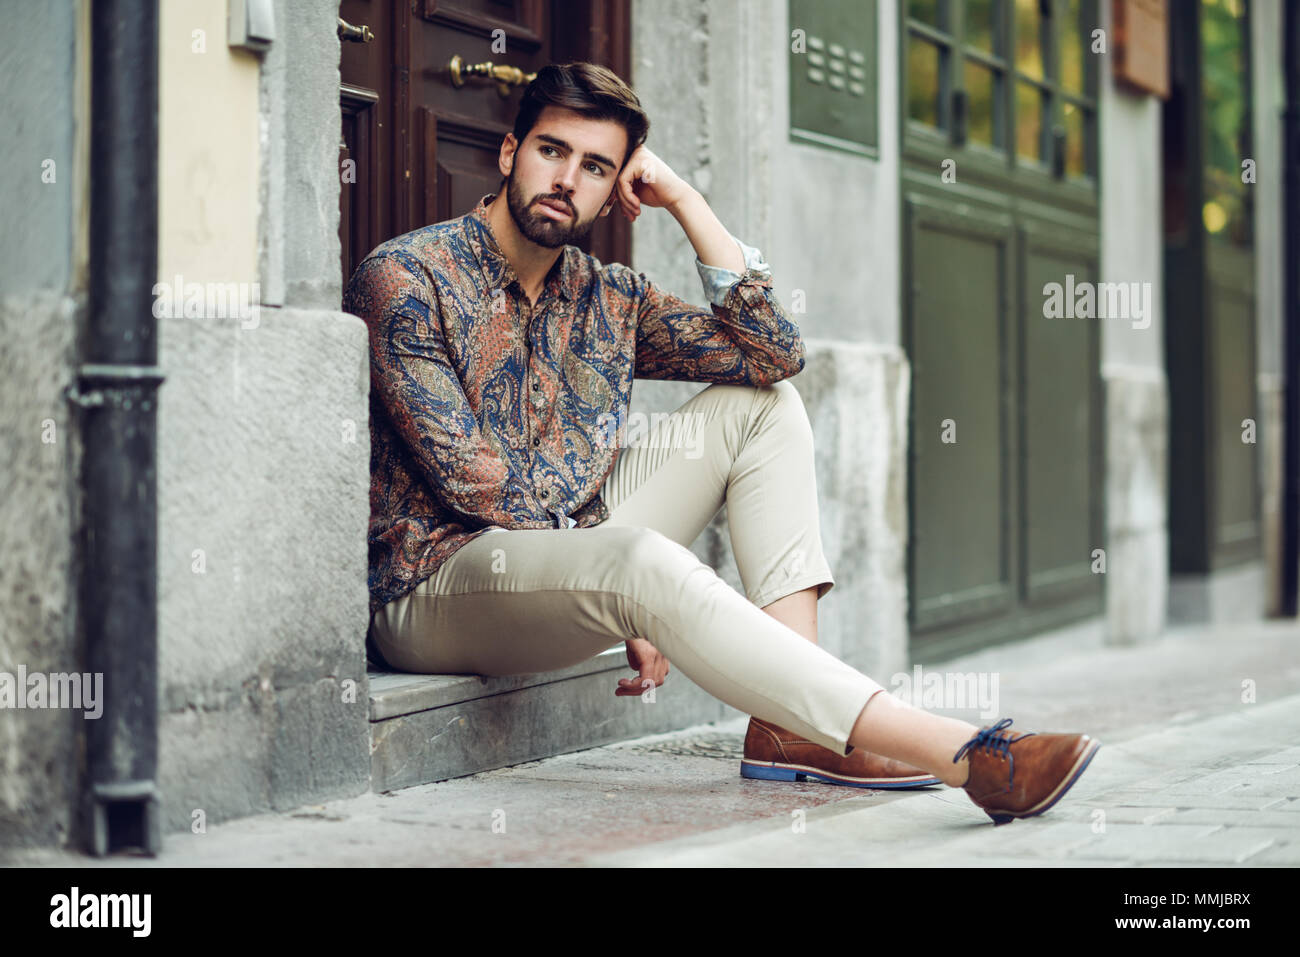 Joven Hombre Barbado, modelo de moda urbana, sentados en un paso vistiendo ropa casual. Chico con barba y peinado moderno mirando lado de la calle Fotografía de stock - Alamy